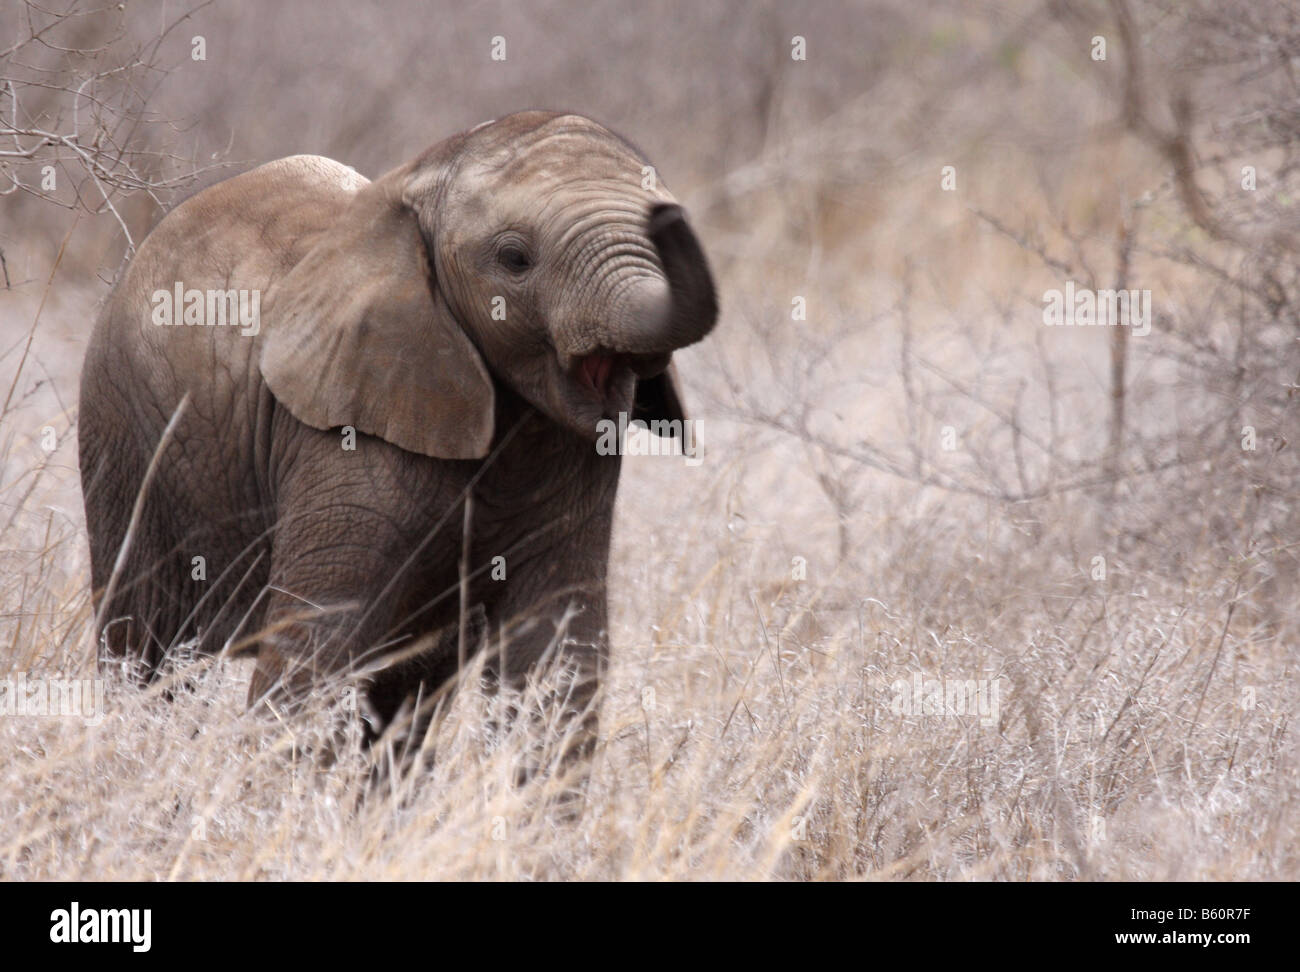 african elephant loxodonta africana single juvenile with trunk raised Stock Photo